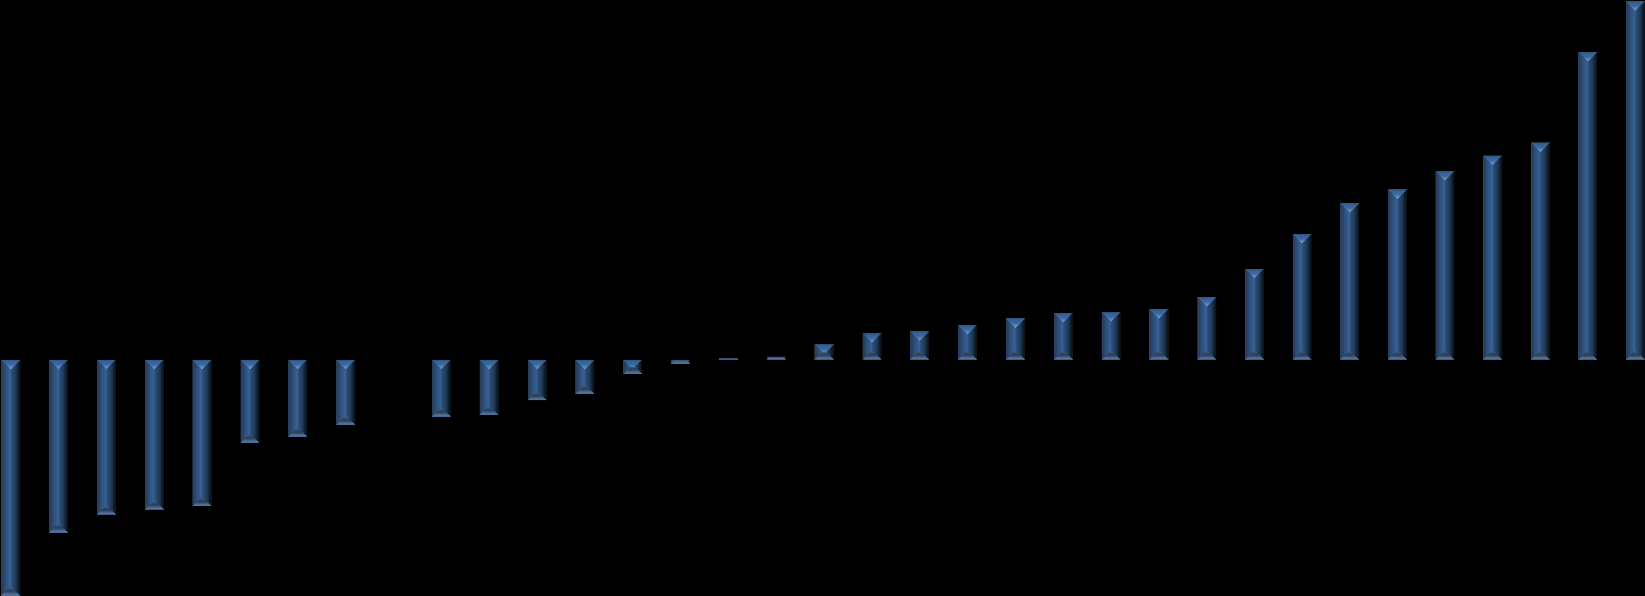 0,6 2000-2010 Dönemi Ortalama Yurtiçi Kaynak Kullanım Oranları (1993-1999 Dönemi Ortalamasına göre Değişim) KAYNAK: Ganioğlu ve Yalçın, TCMB (2012) 0,5 0,4 0,3 0,2 0,1 0,0-0,1-0,2-0,3-0,4 Malezya